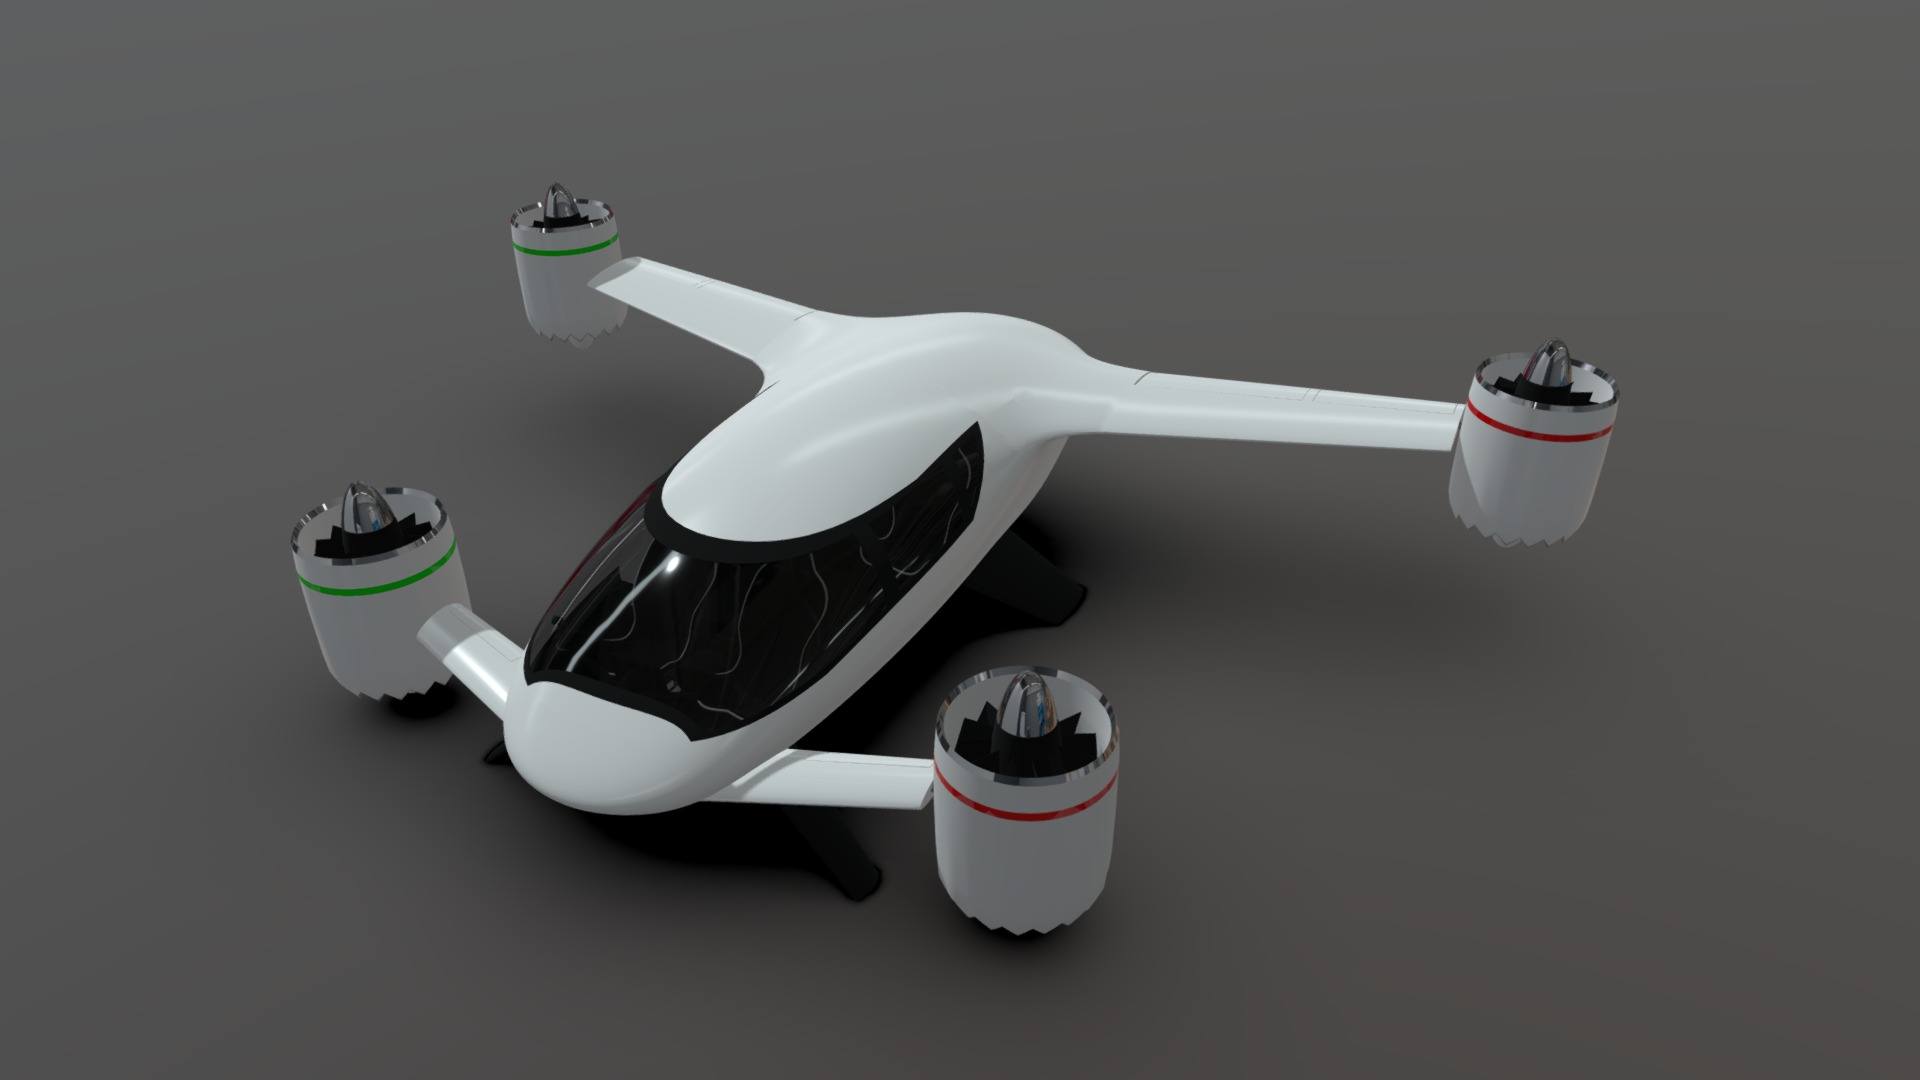 3D model Old version – Sbx eVTOL flying Vehicle Concept - This is a 3D model of the Old version - Sbx eVTOL flying Vehicle Concept. The 3D model is about logo.